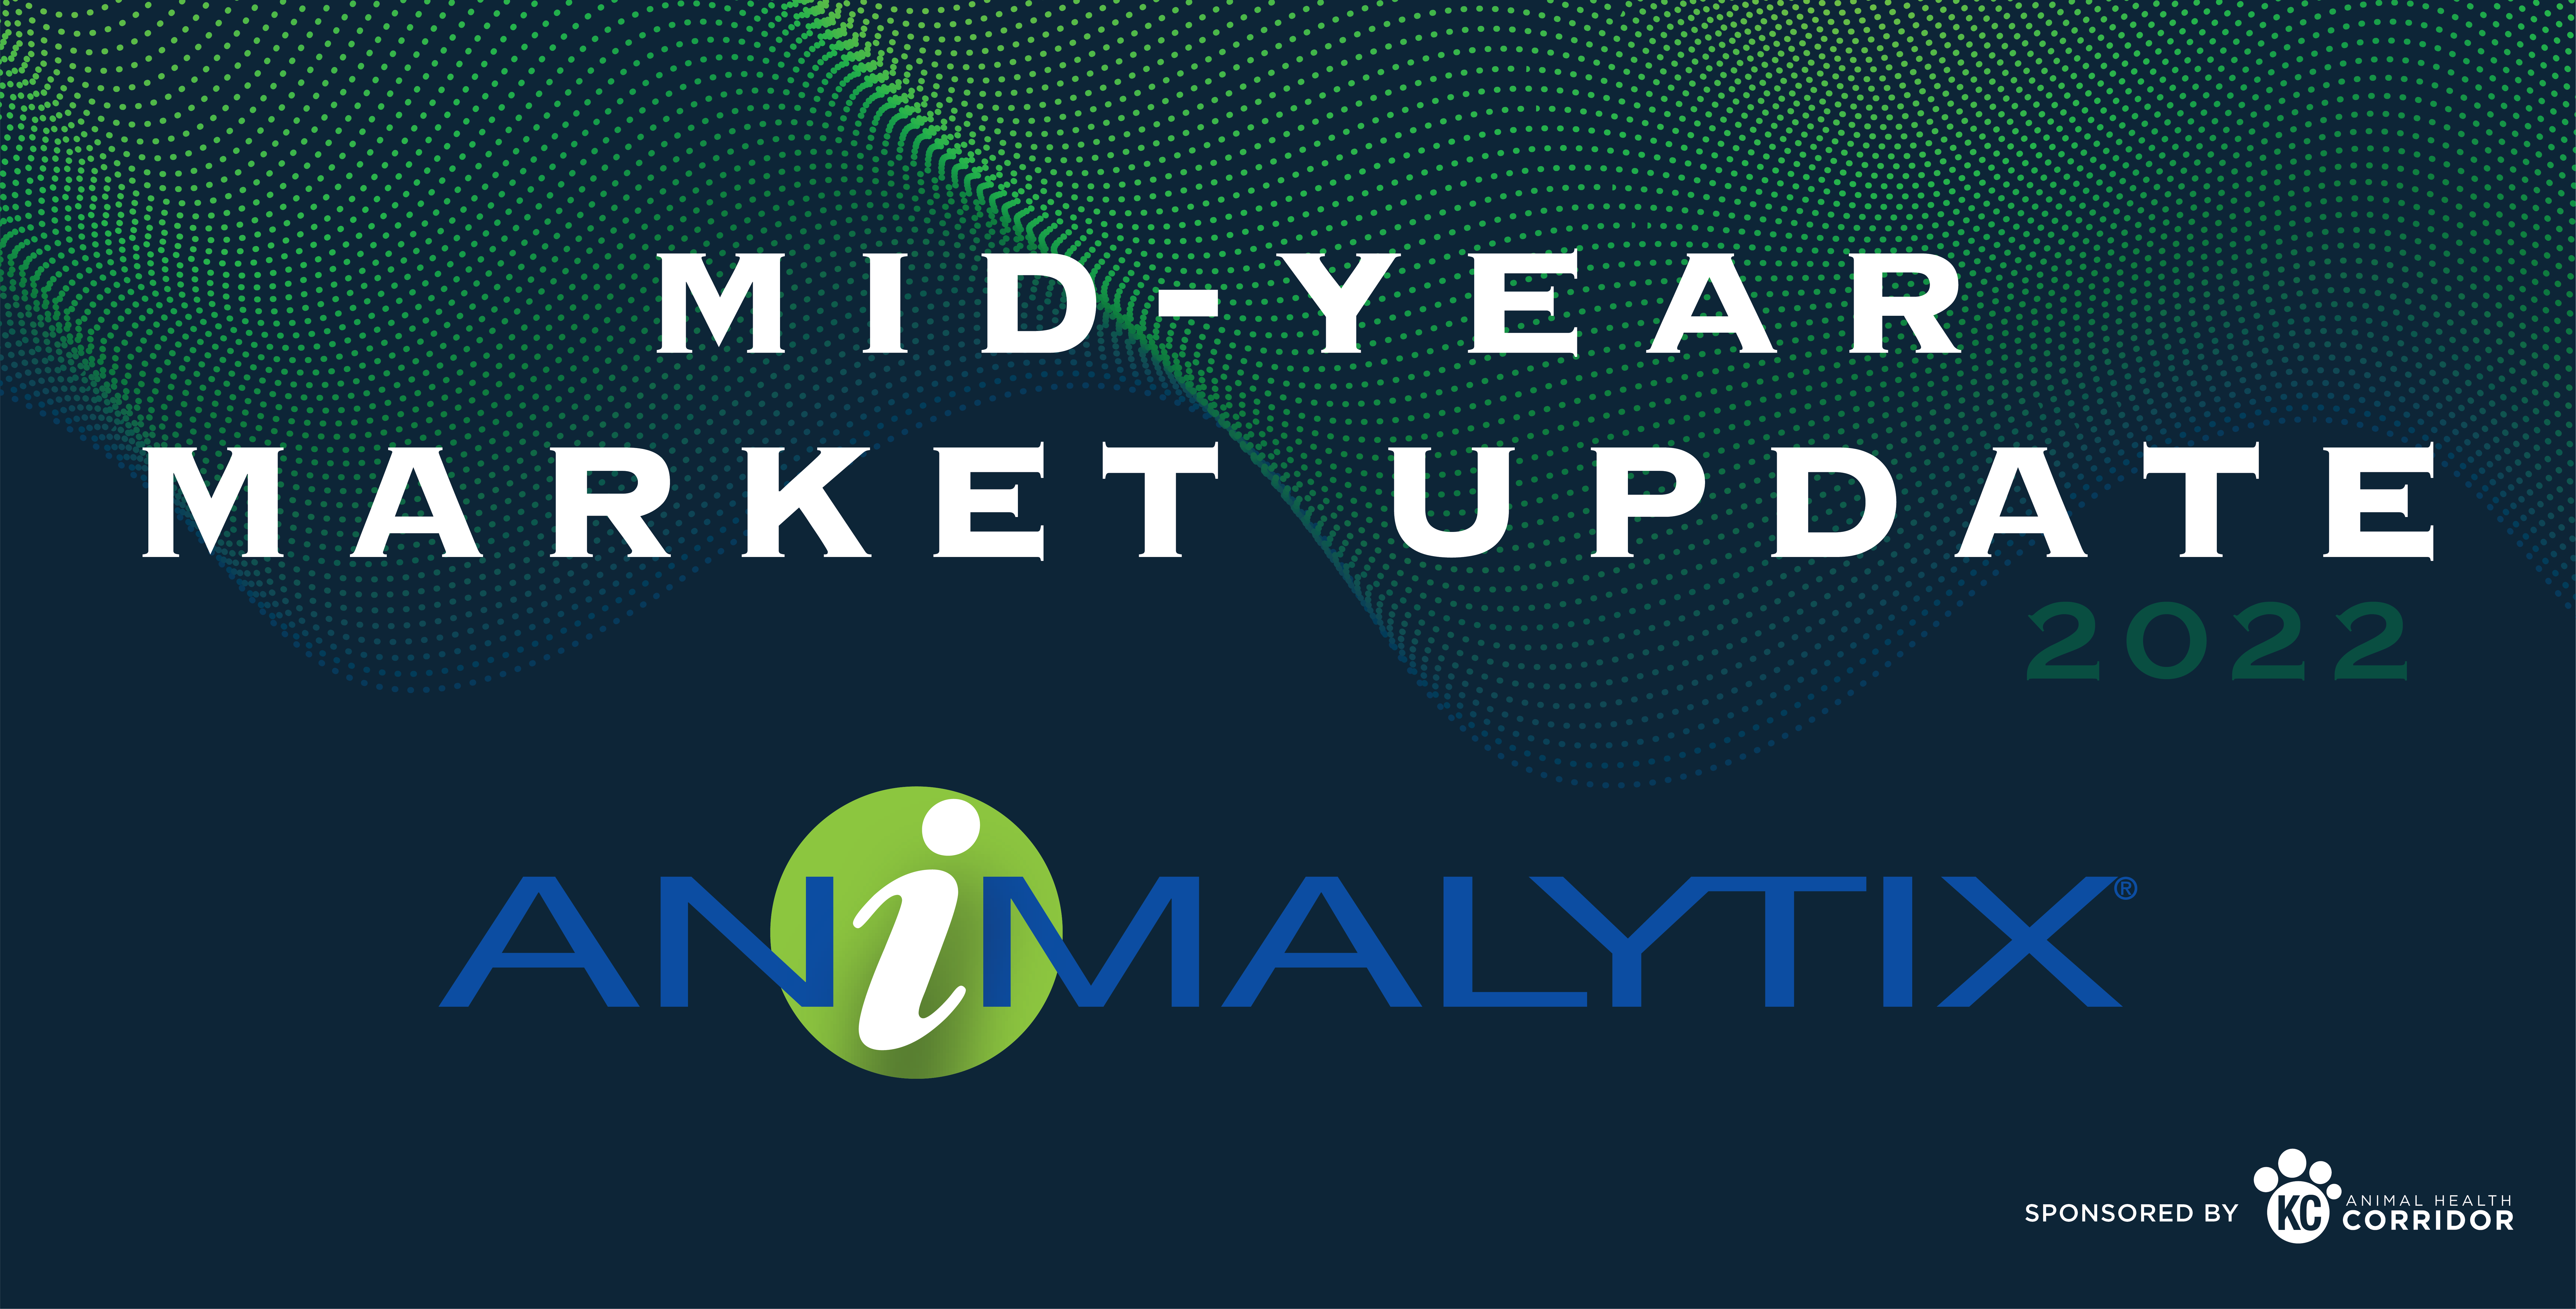 Mid-Year Market Update